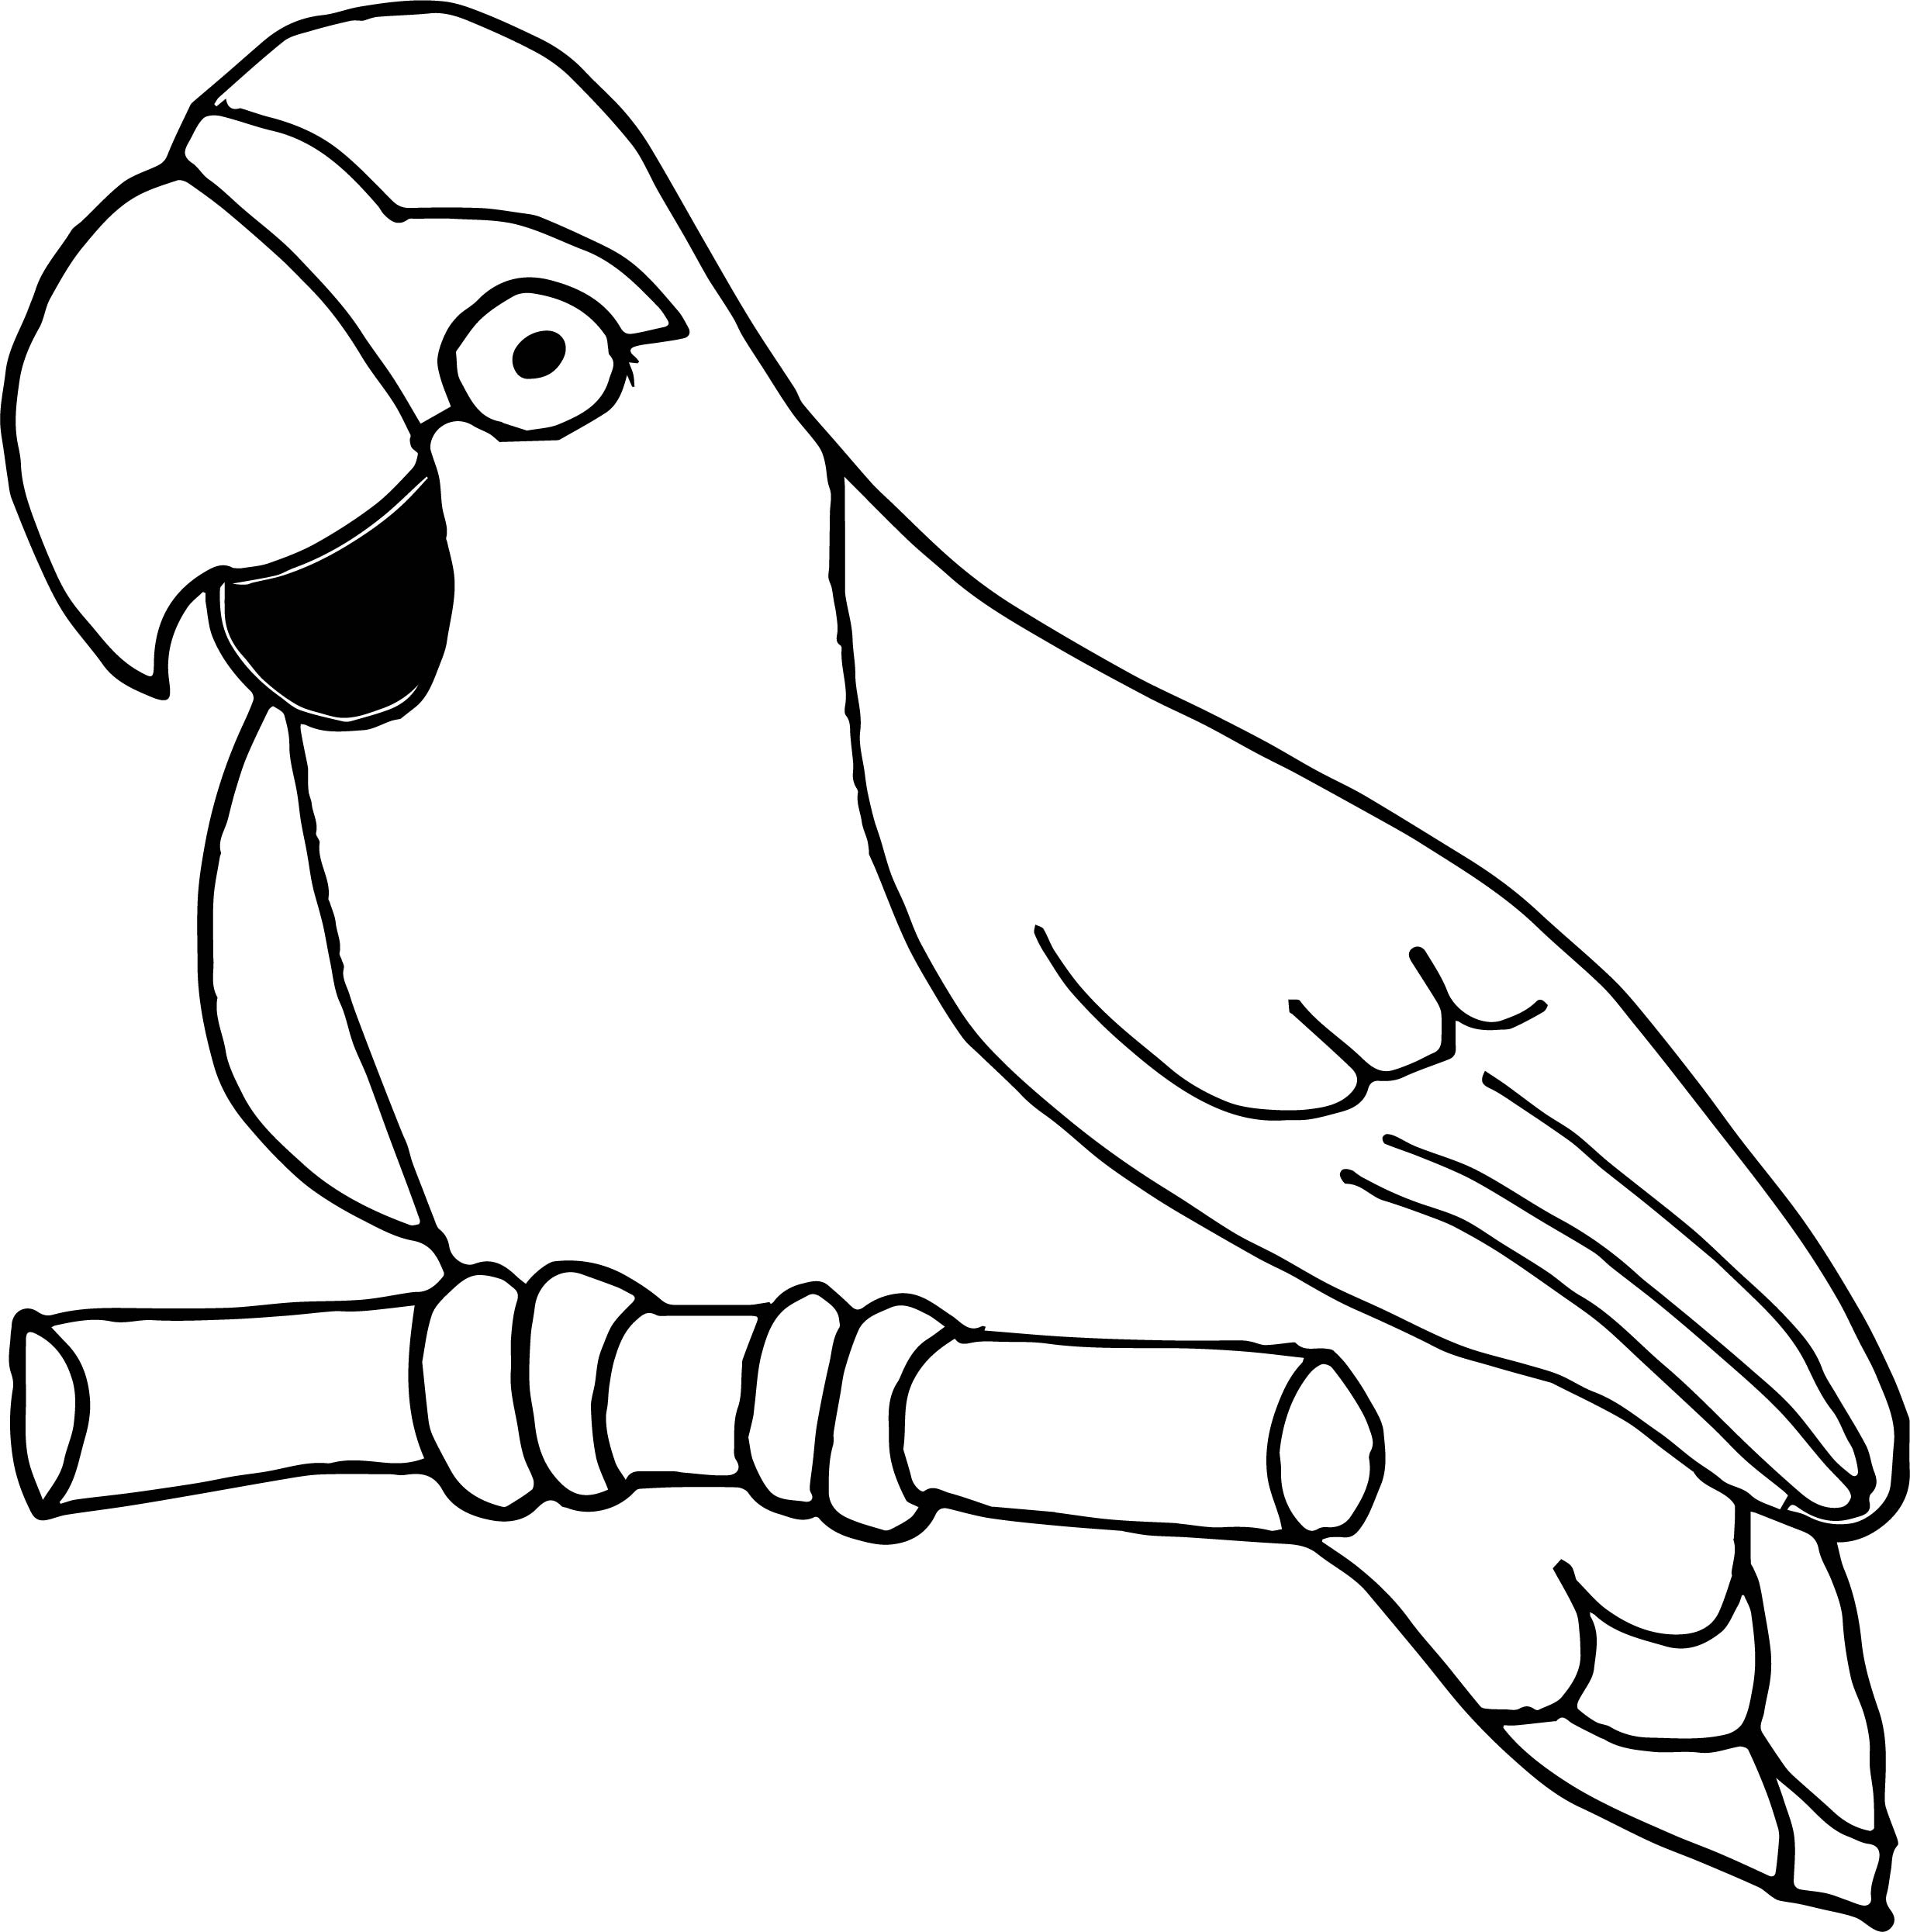 Попугай для раскраски на белом фоне